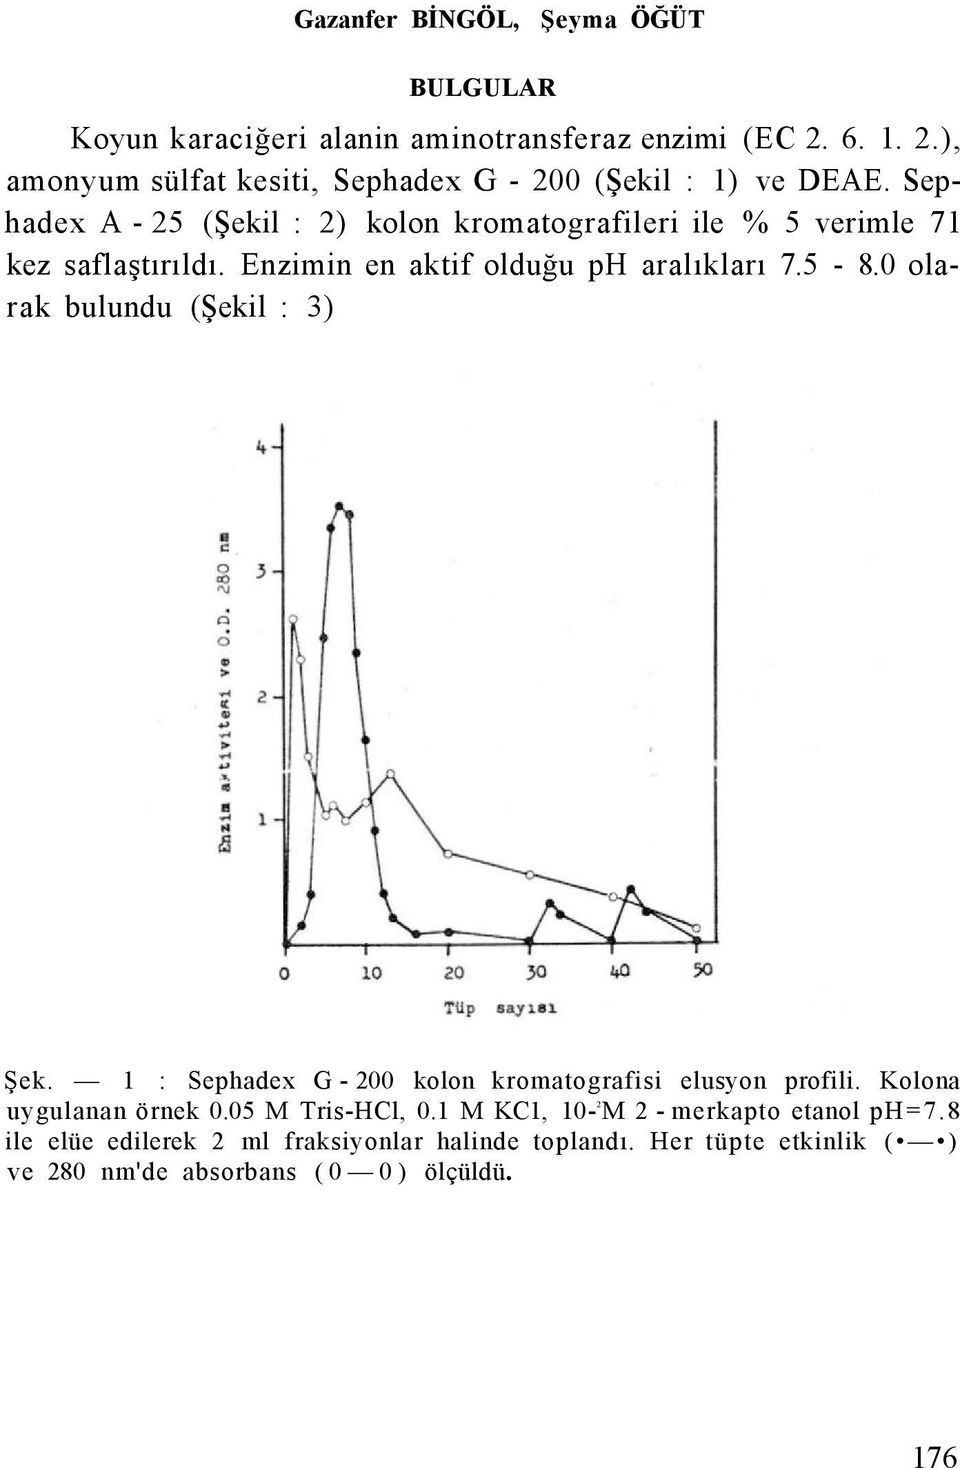 Sephadex A - 25 (Şekil : 2) kolon kromatografileri ile % 5 verimle 71 kez saflaştırıldı. Enzimin en aktif olduğu ph aralıkları 7.5-8.